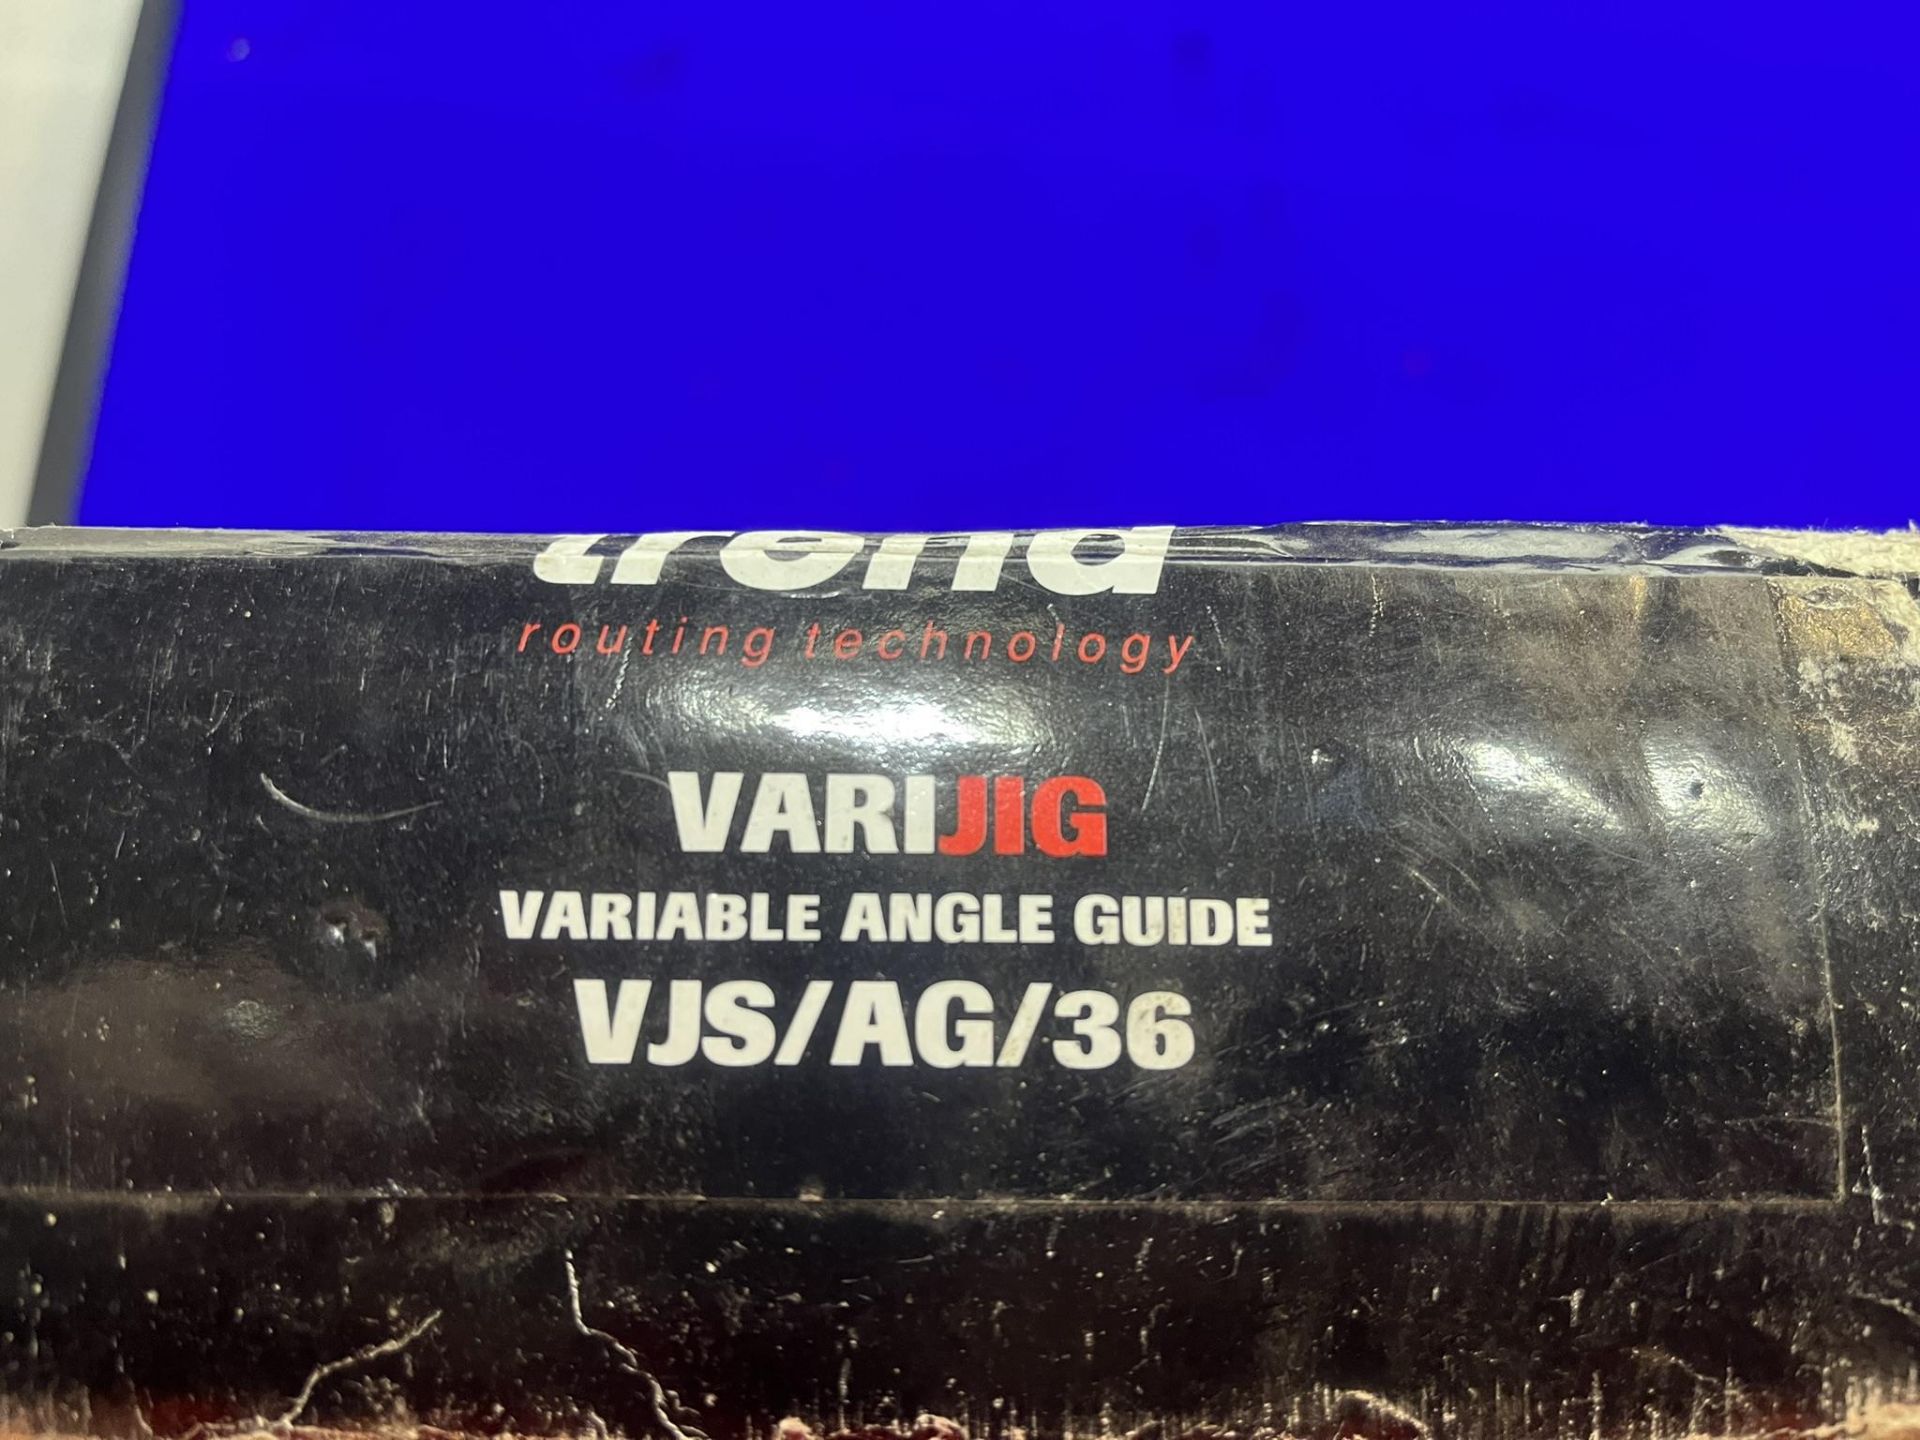 Trend VJS/AG/36 Varijig Angle Guide - Image 3 of 3